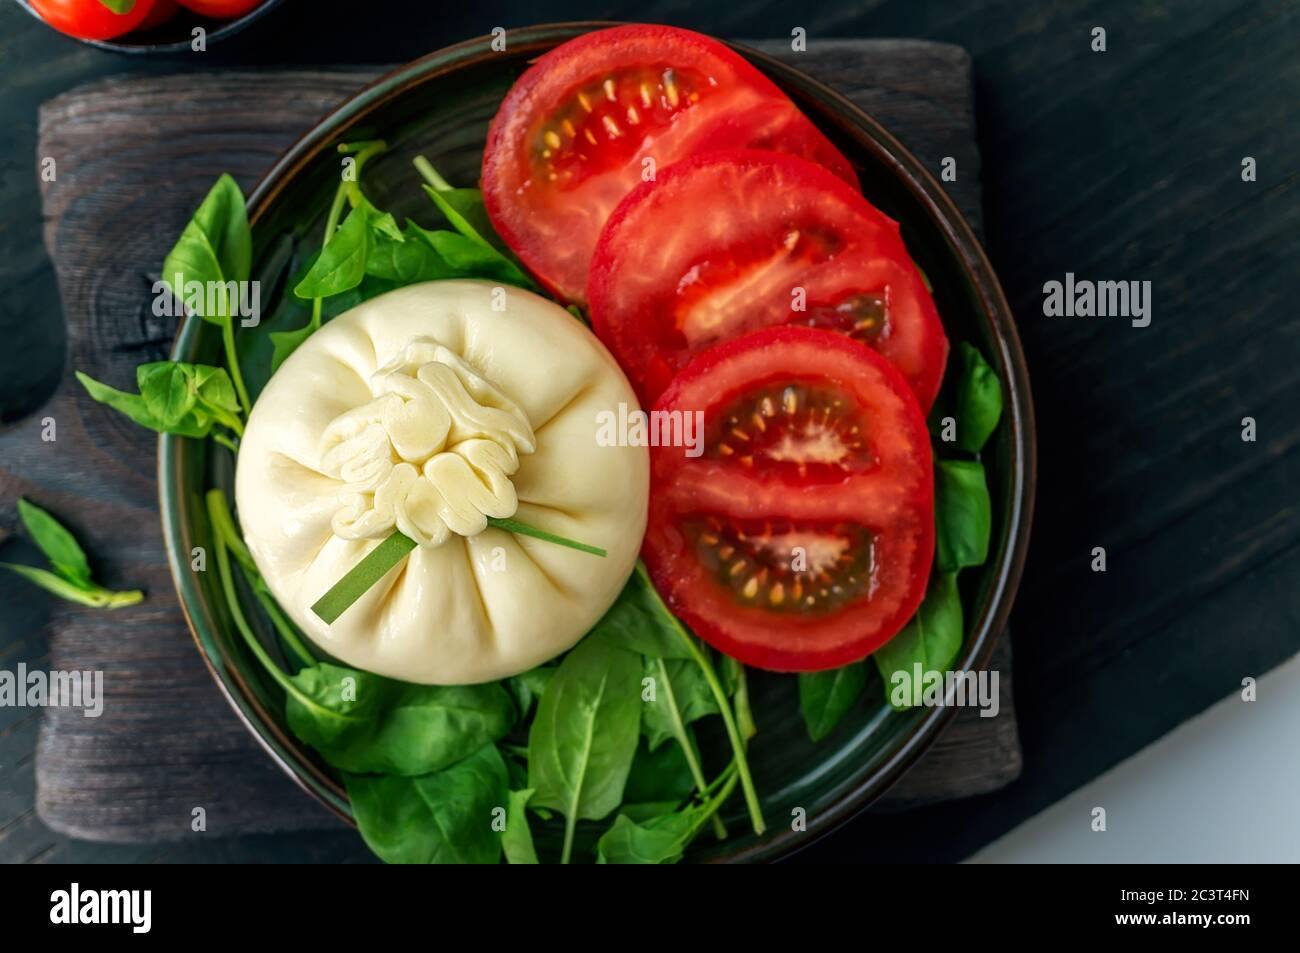 Burrata. Abendessen mit Tomaten und Spinat Salat mit italienischem Buratto Käse. Konzept der gesunden mediterranen Küche. Stockfoto